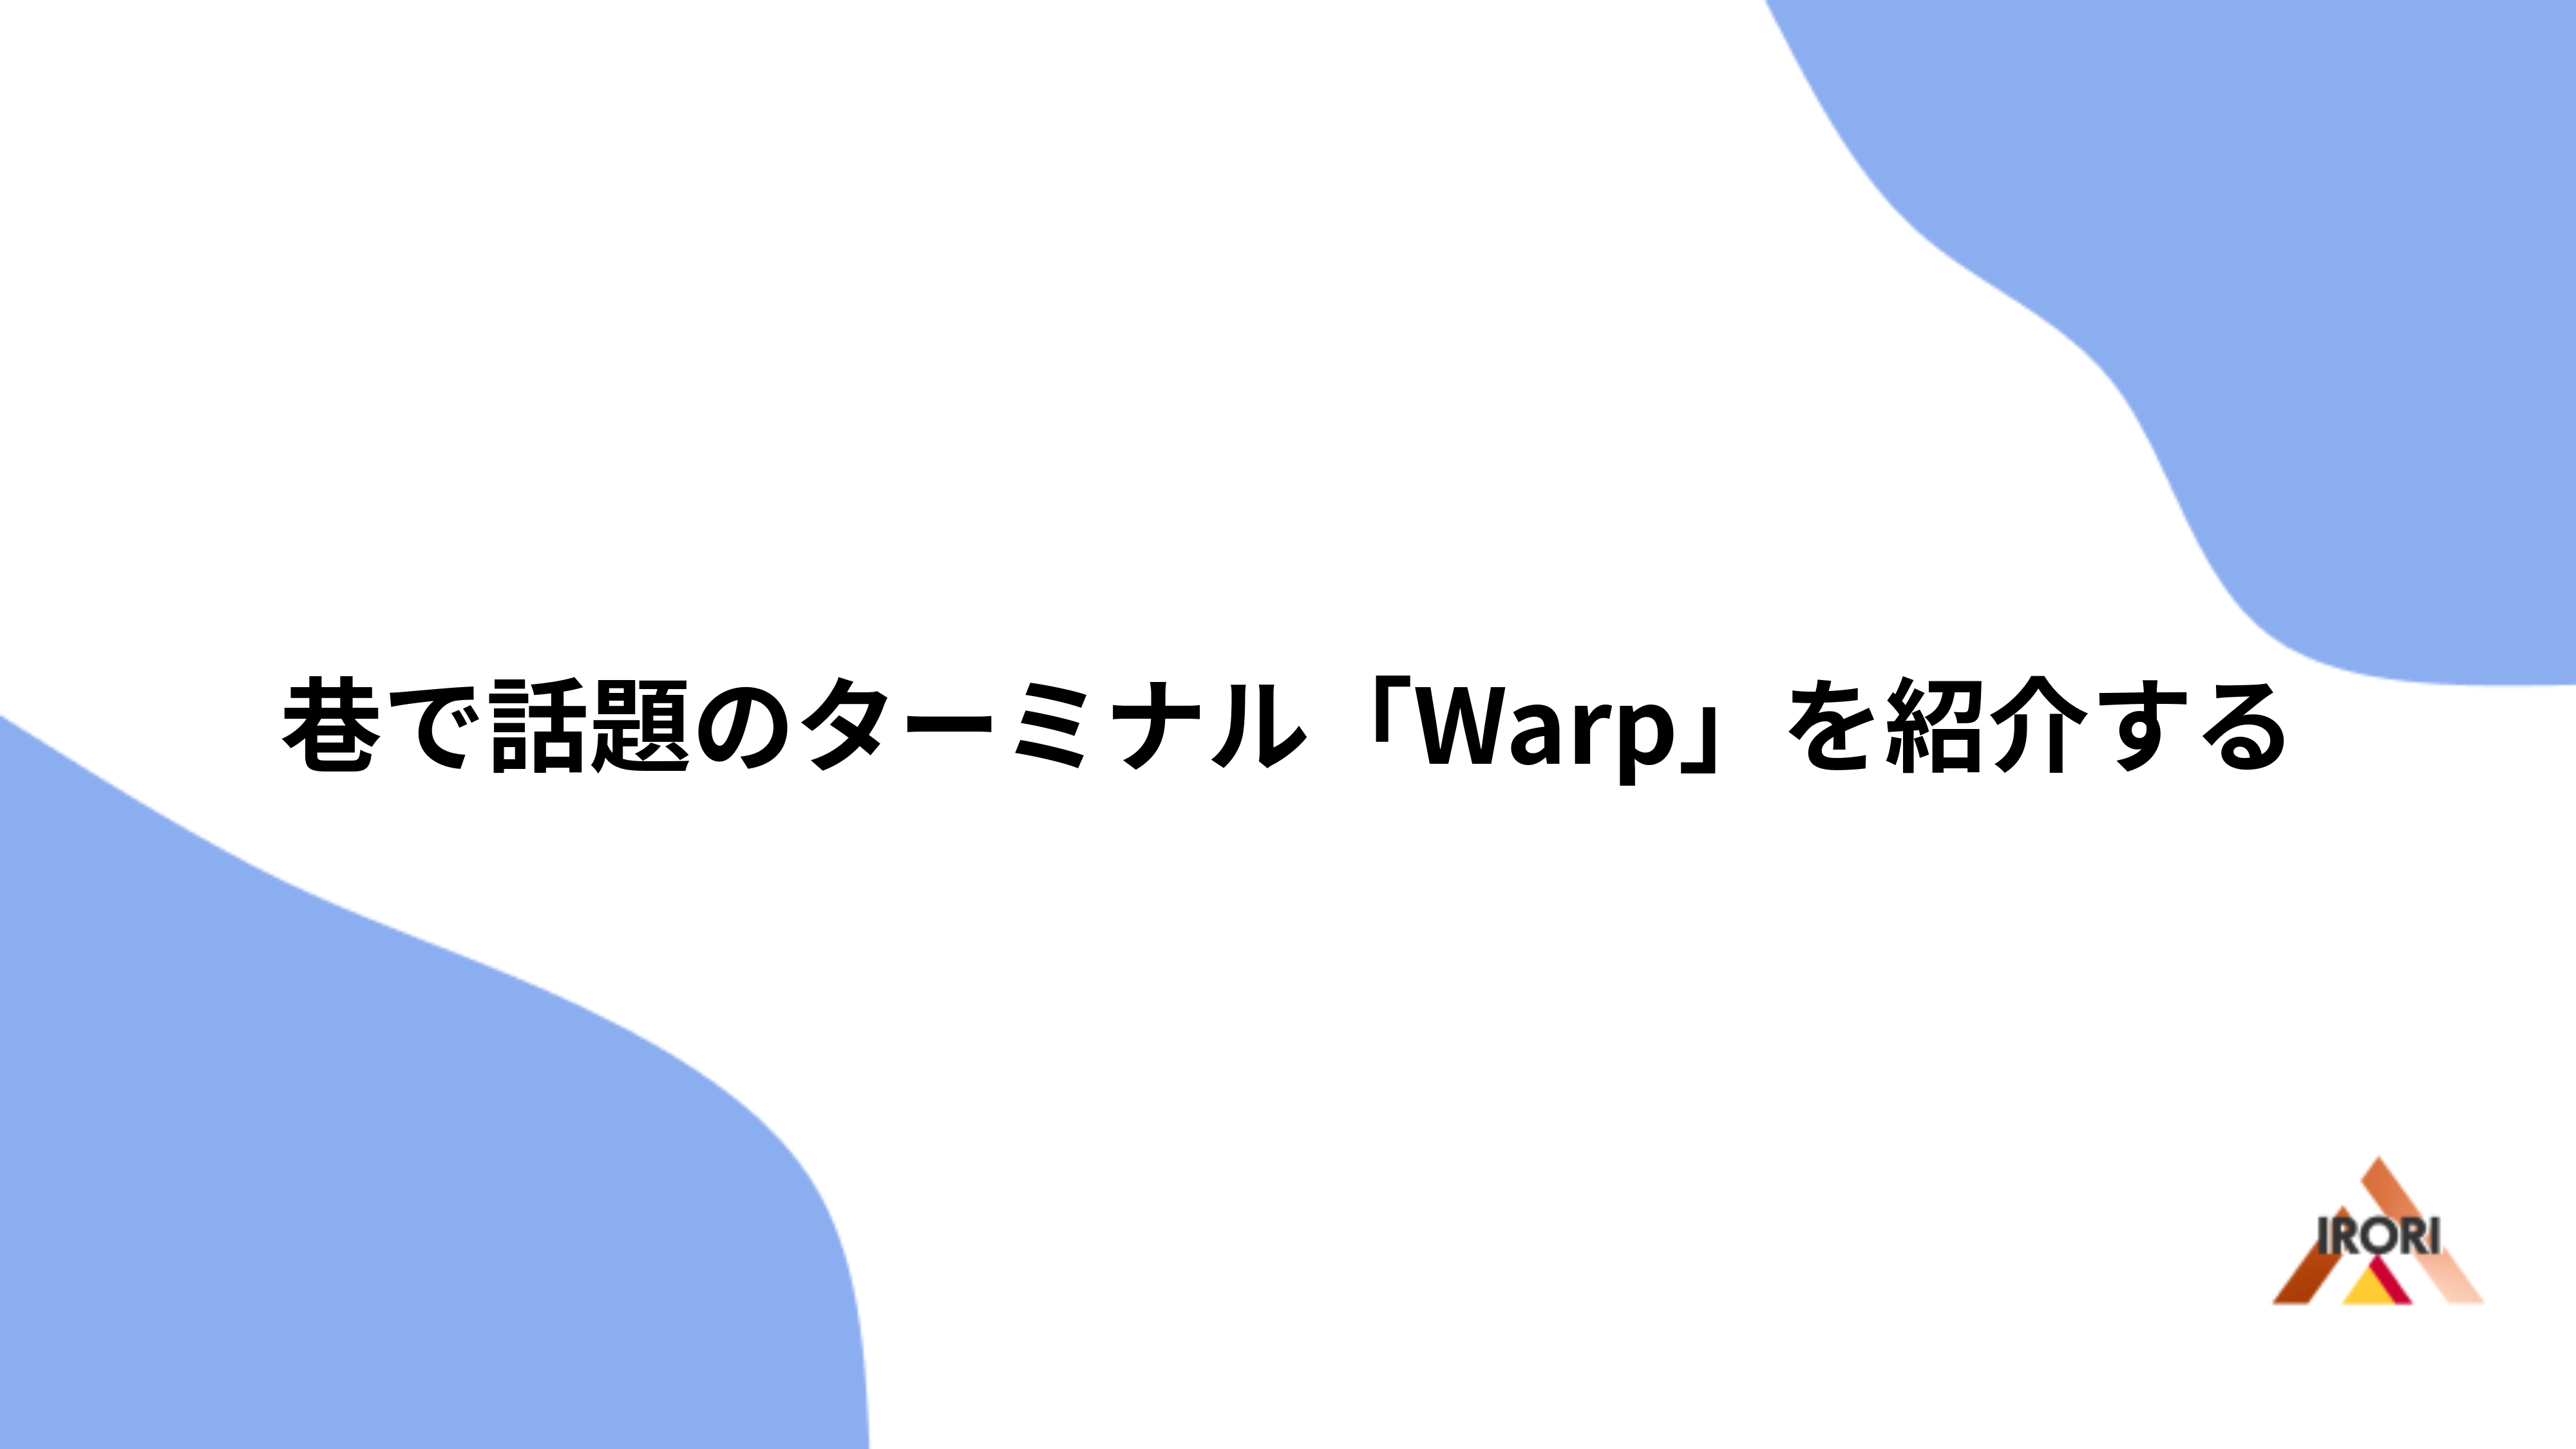 巷で話題のターミナル「Warp」を紹介する